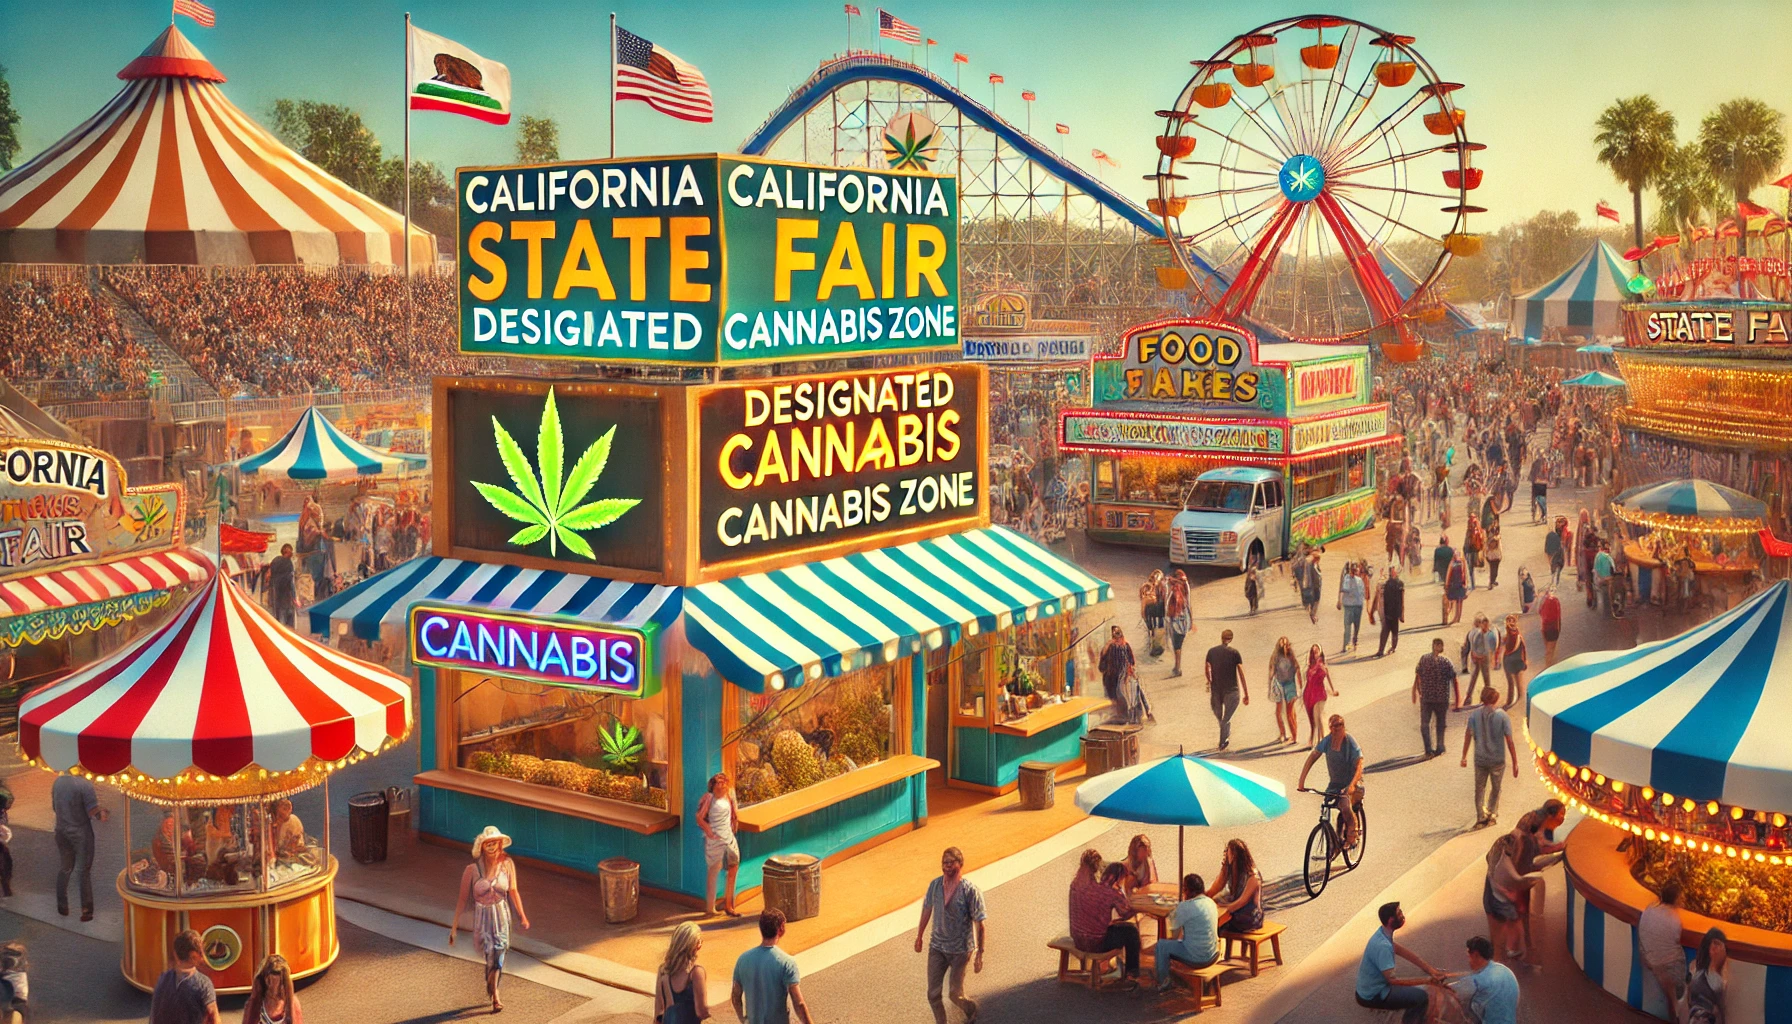 california state fair cannabis zone